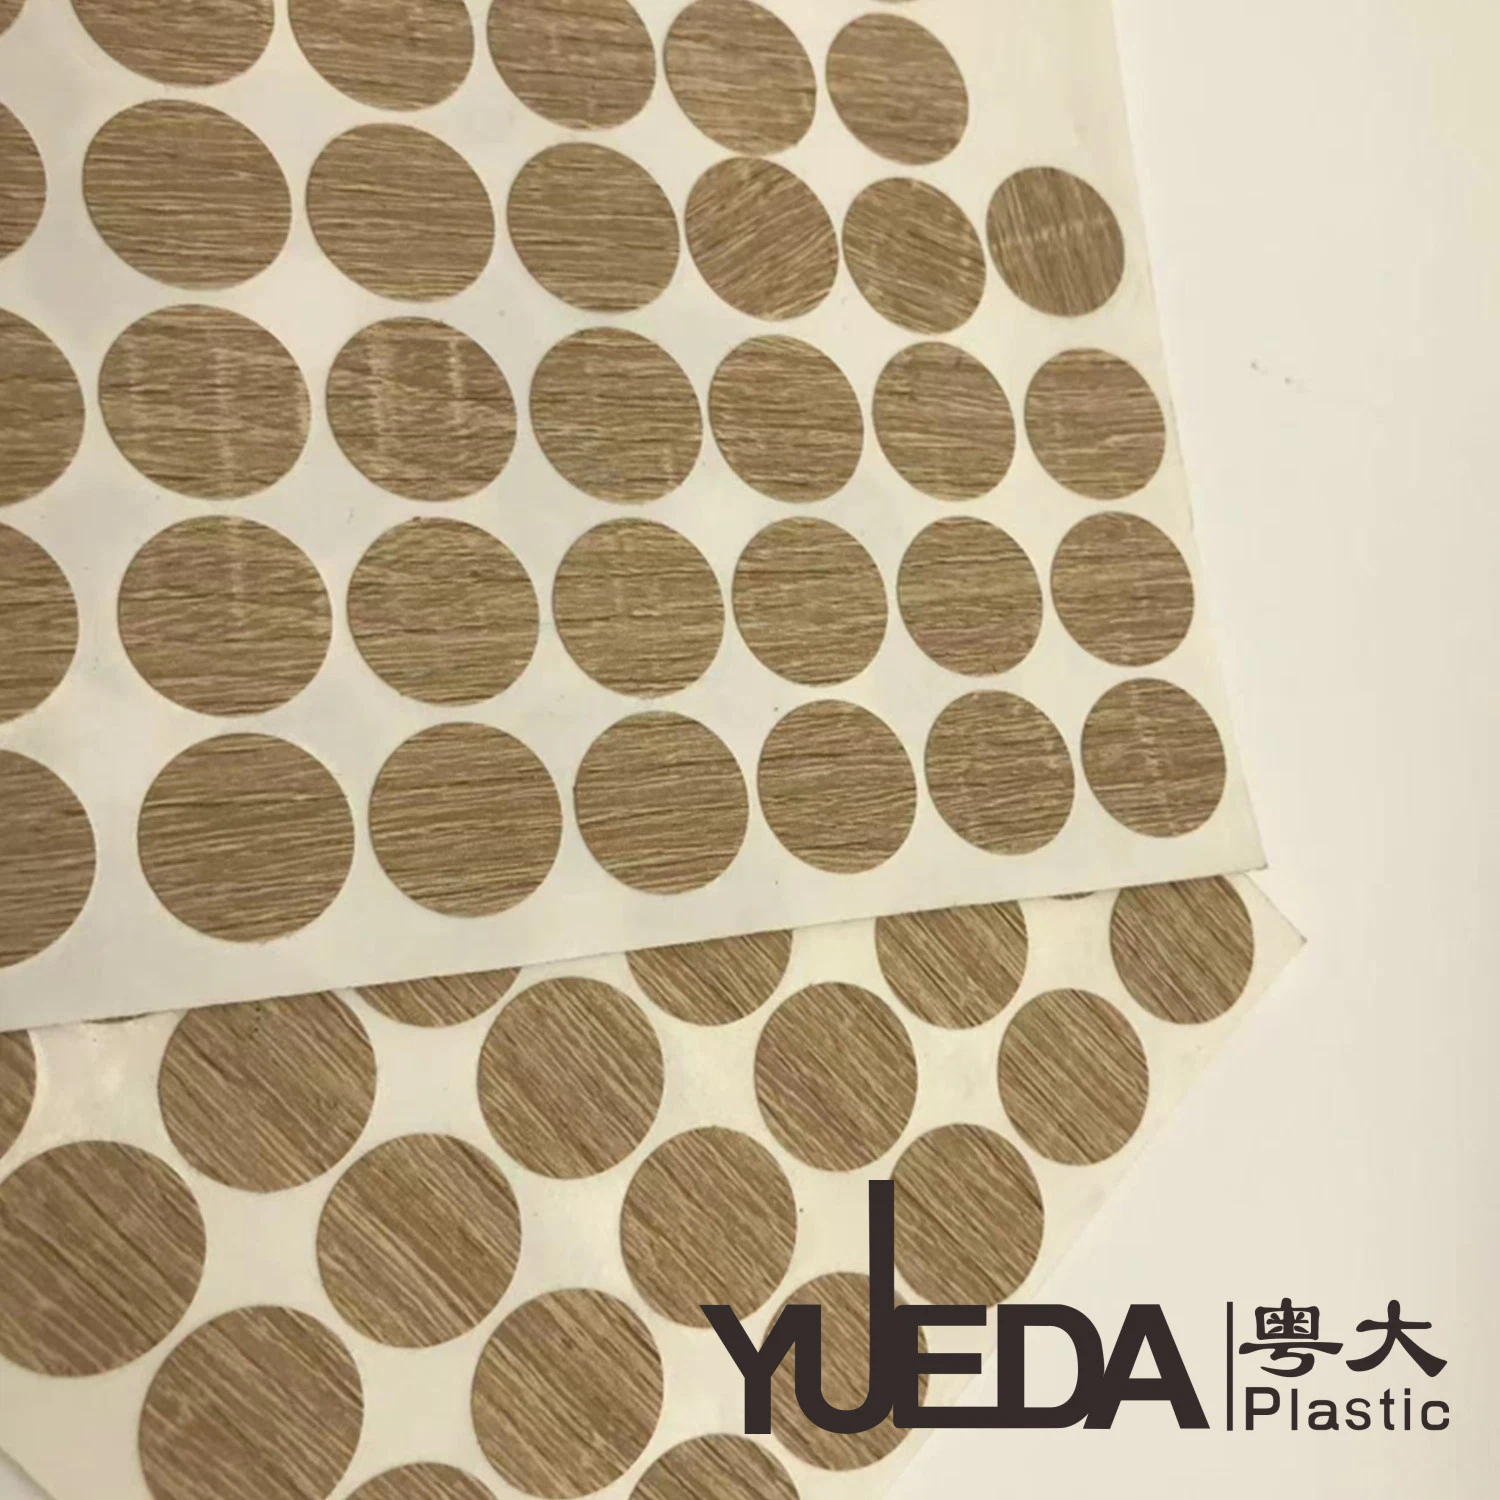 Yueda tapones de rosca de plástico adhesivo/Orificios que cubre la pegatina de muebles de madera BM456